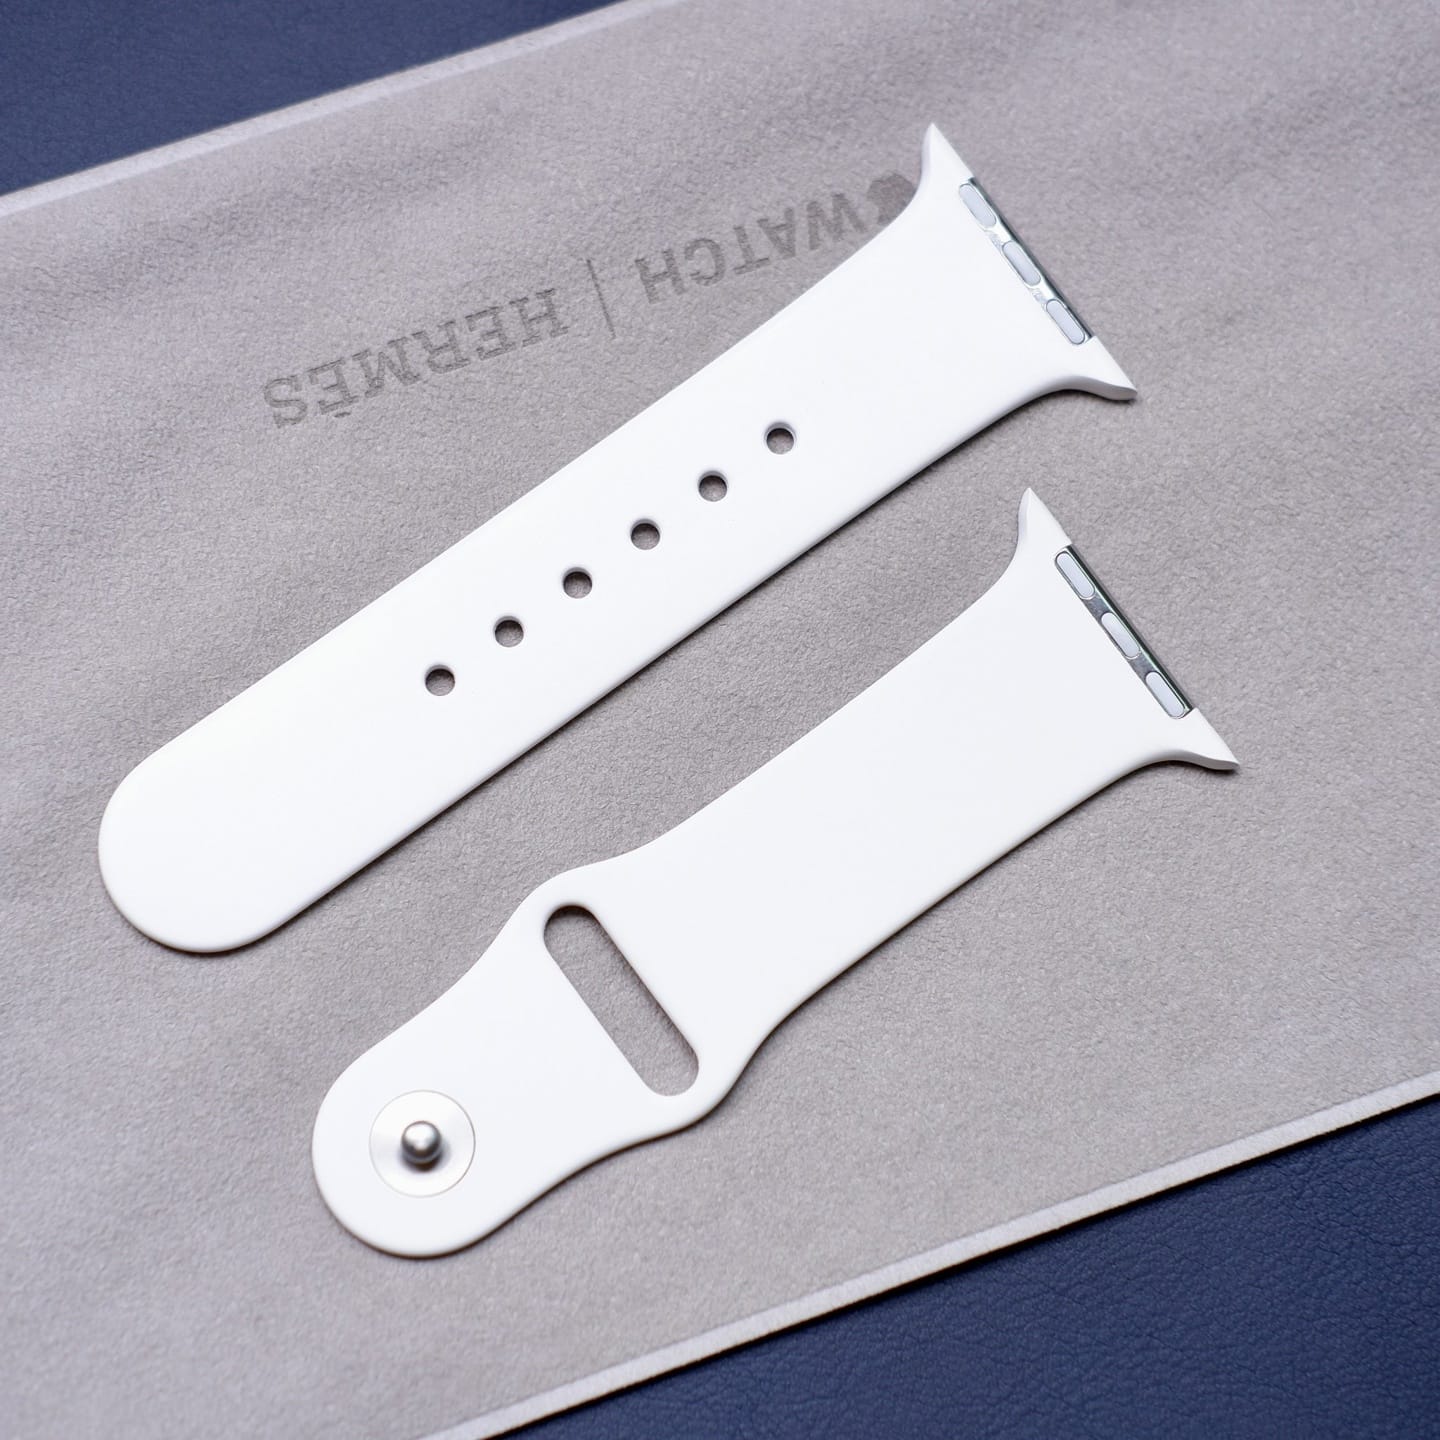 苹果早期 Apple Watch “高端款”运动硅胶表带曝光